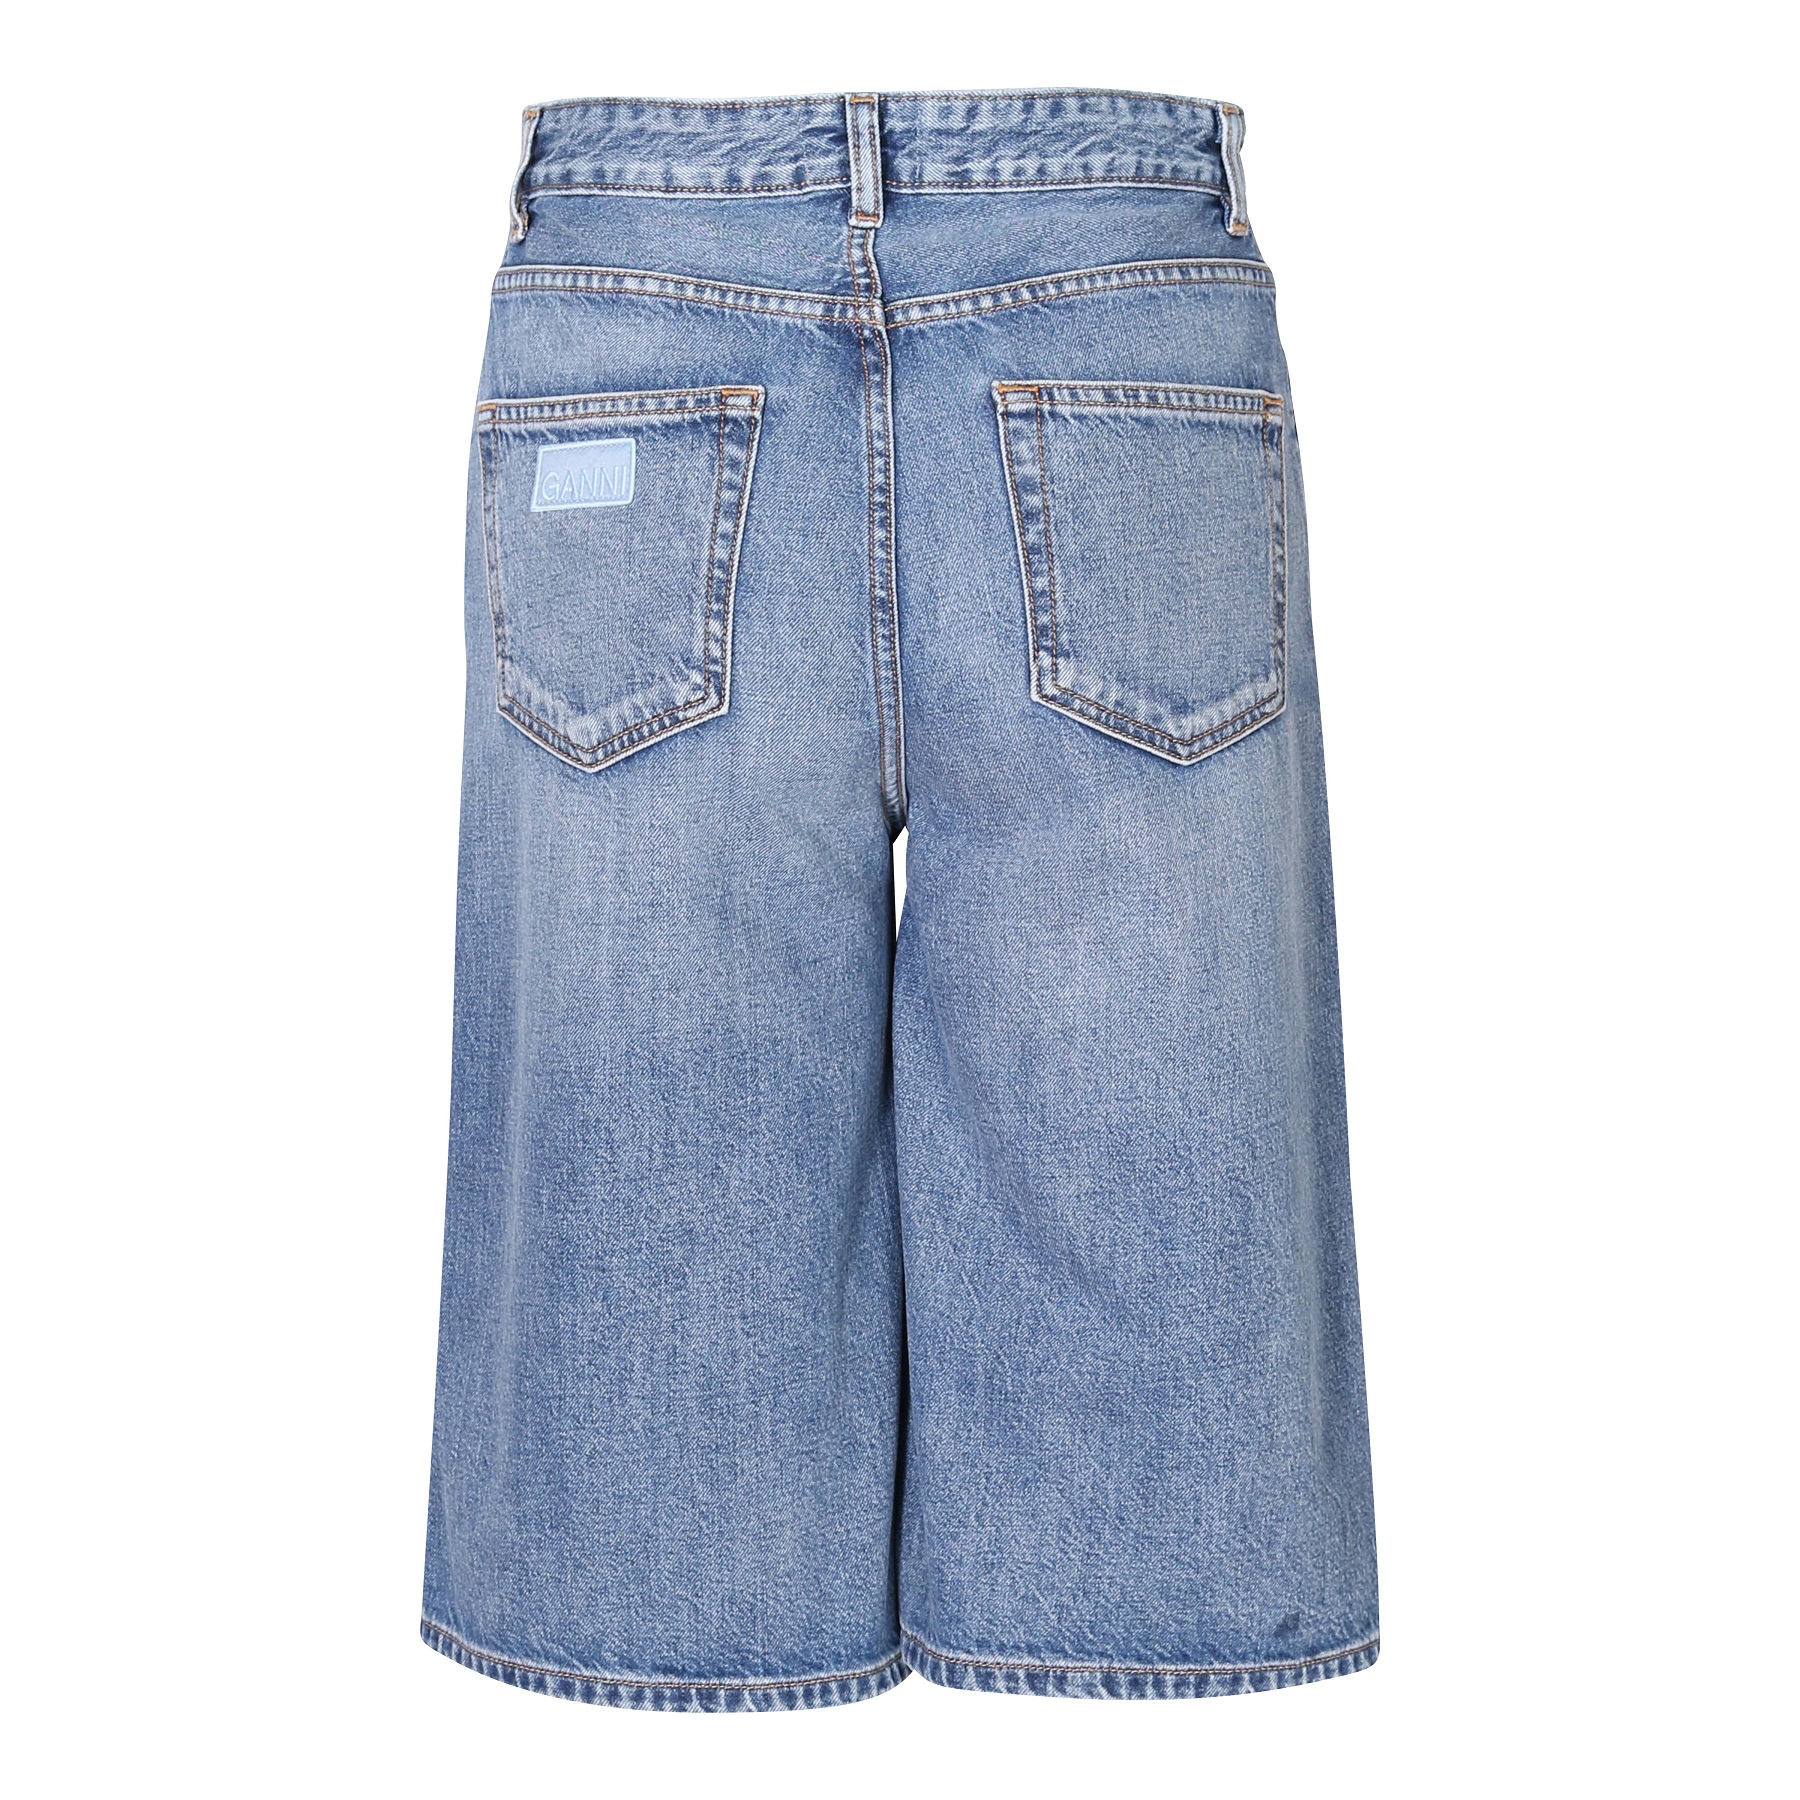 GANNI Vintage Washed Denim Wide Shorts 26